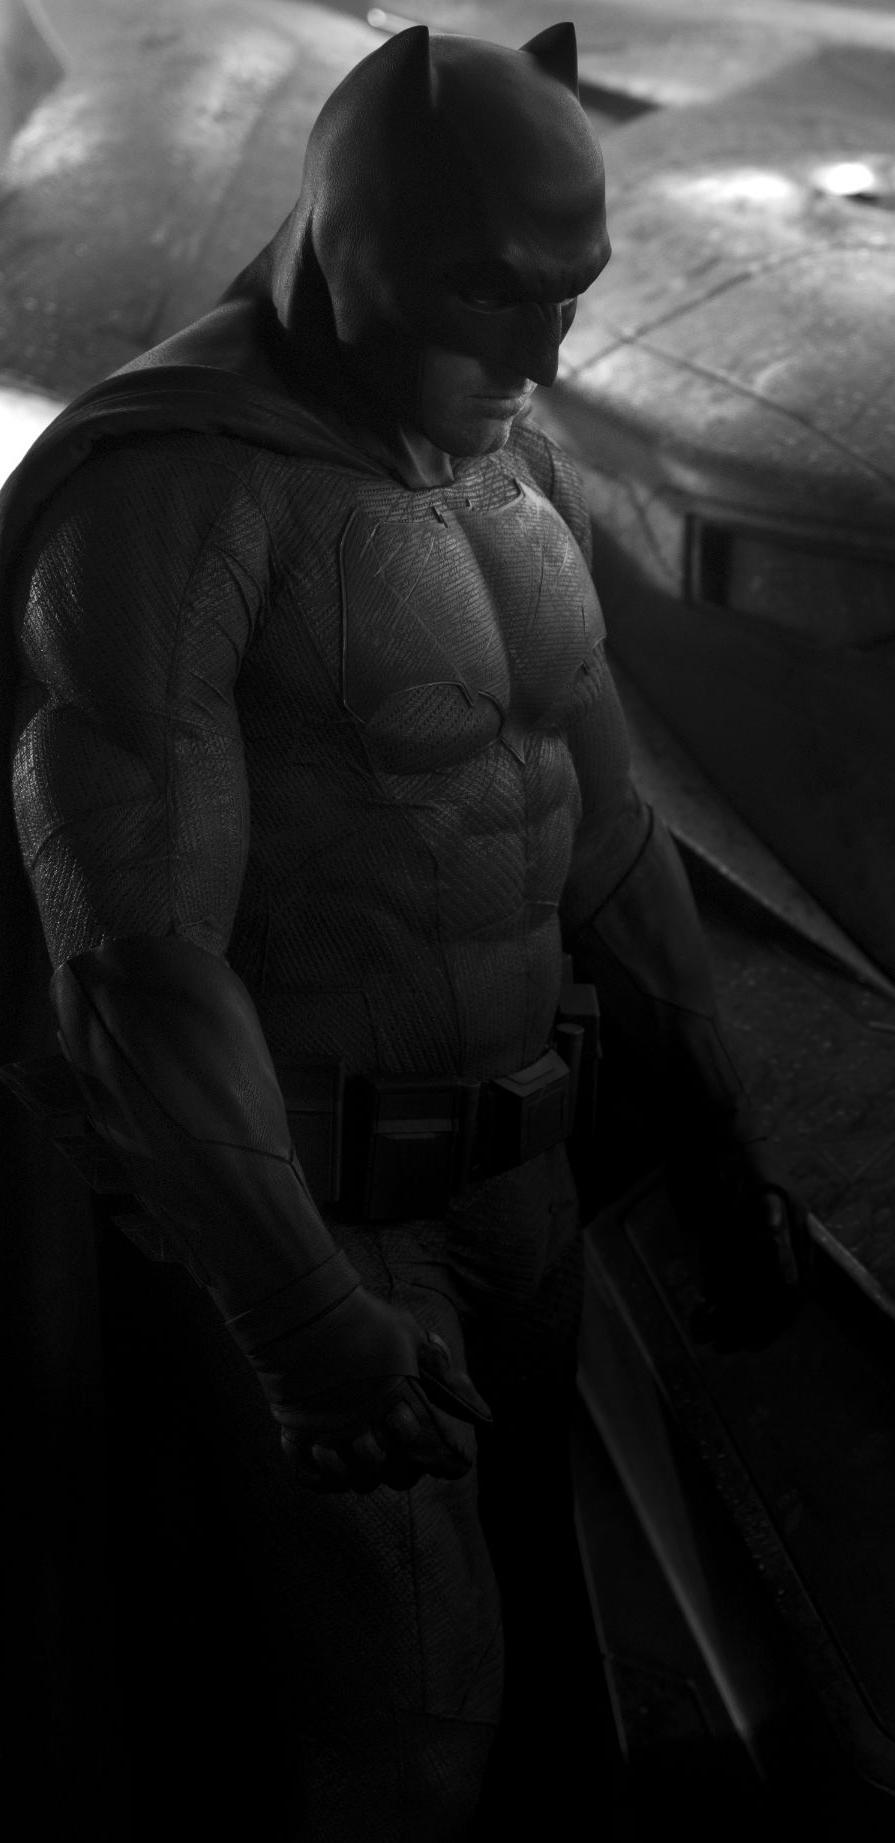 Amo a Batman, estúpido y sensual Batman - Página 3 Tumblr_n5it58vyT91rrkahjo3_r1_1280